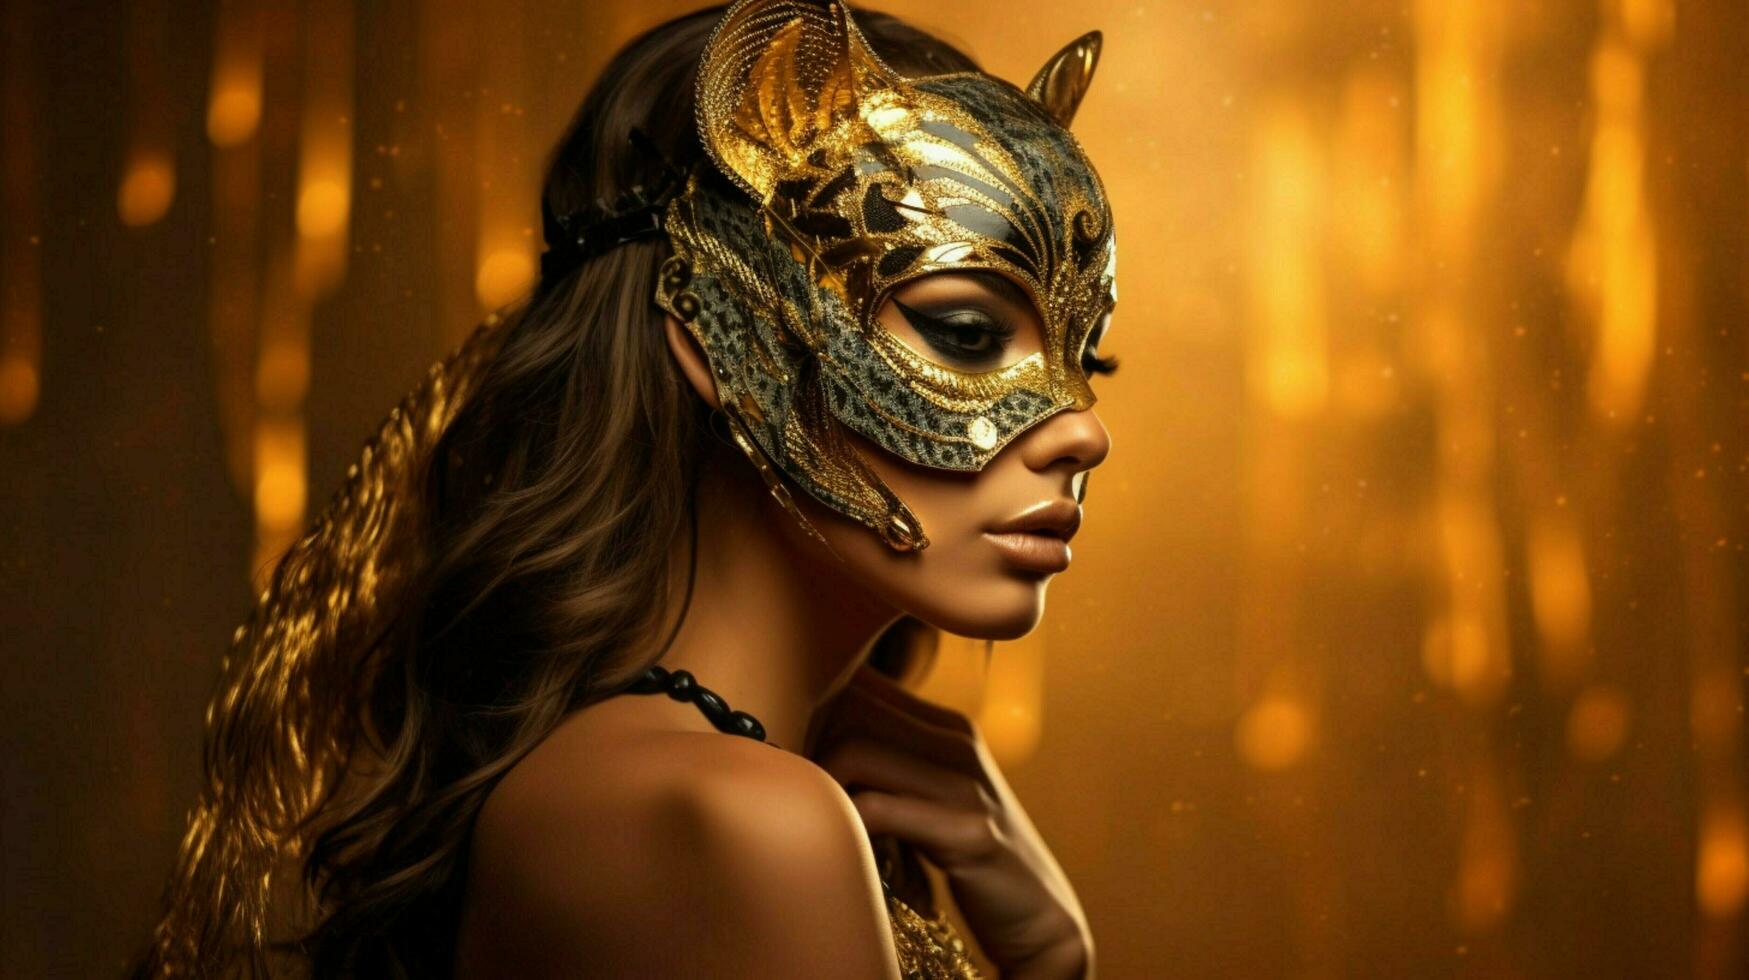 Fantasie Göttin im Tiger Gepard golden Maske foto